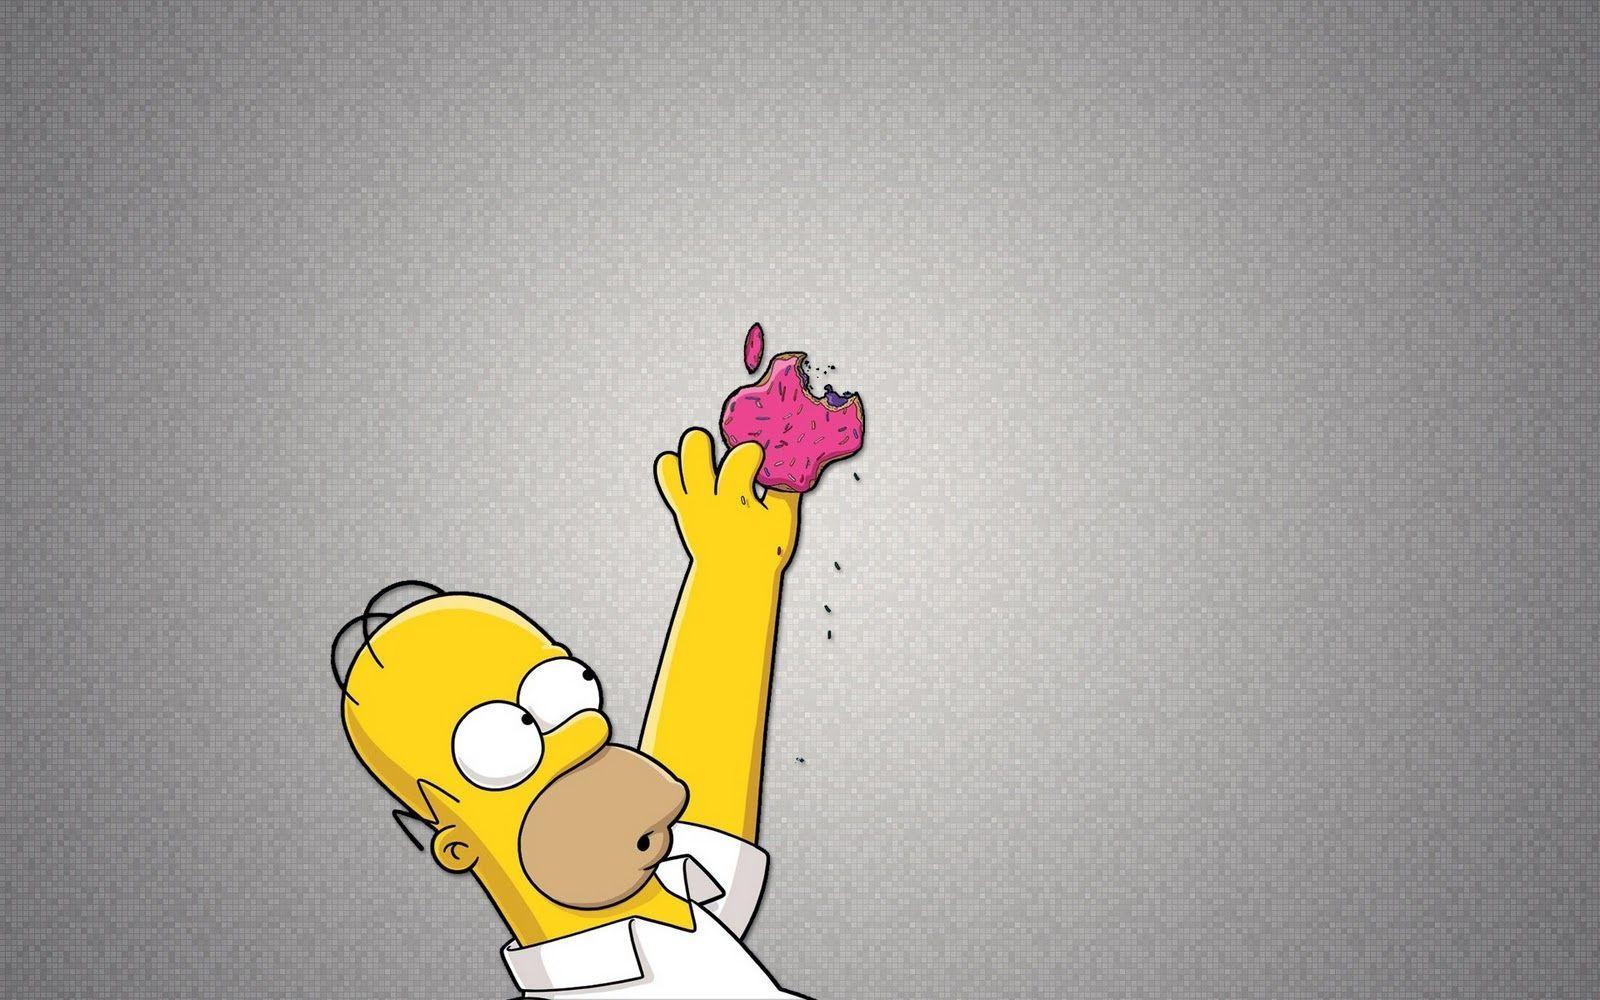 The Simpsons Apple Wallpaper 47674 HD Wallpaper. pictwalls